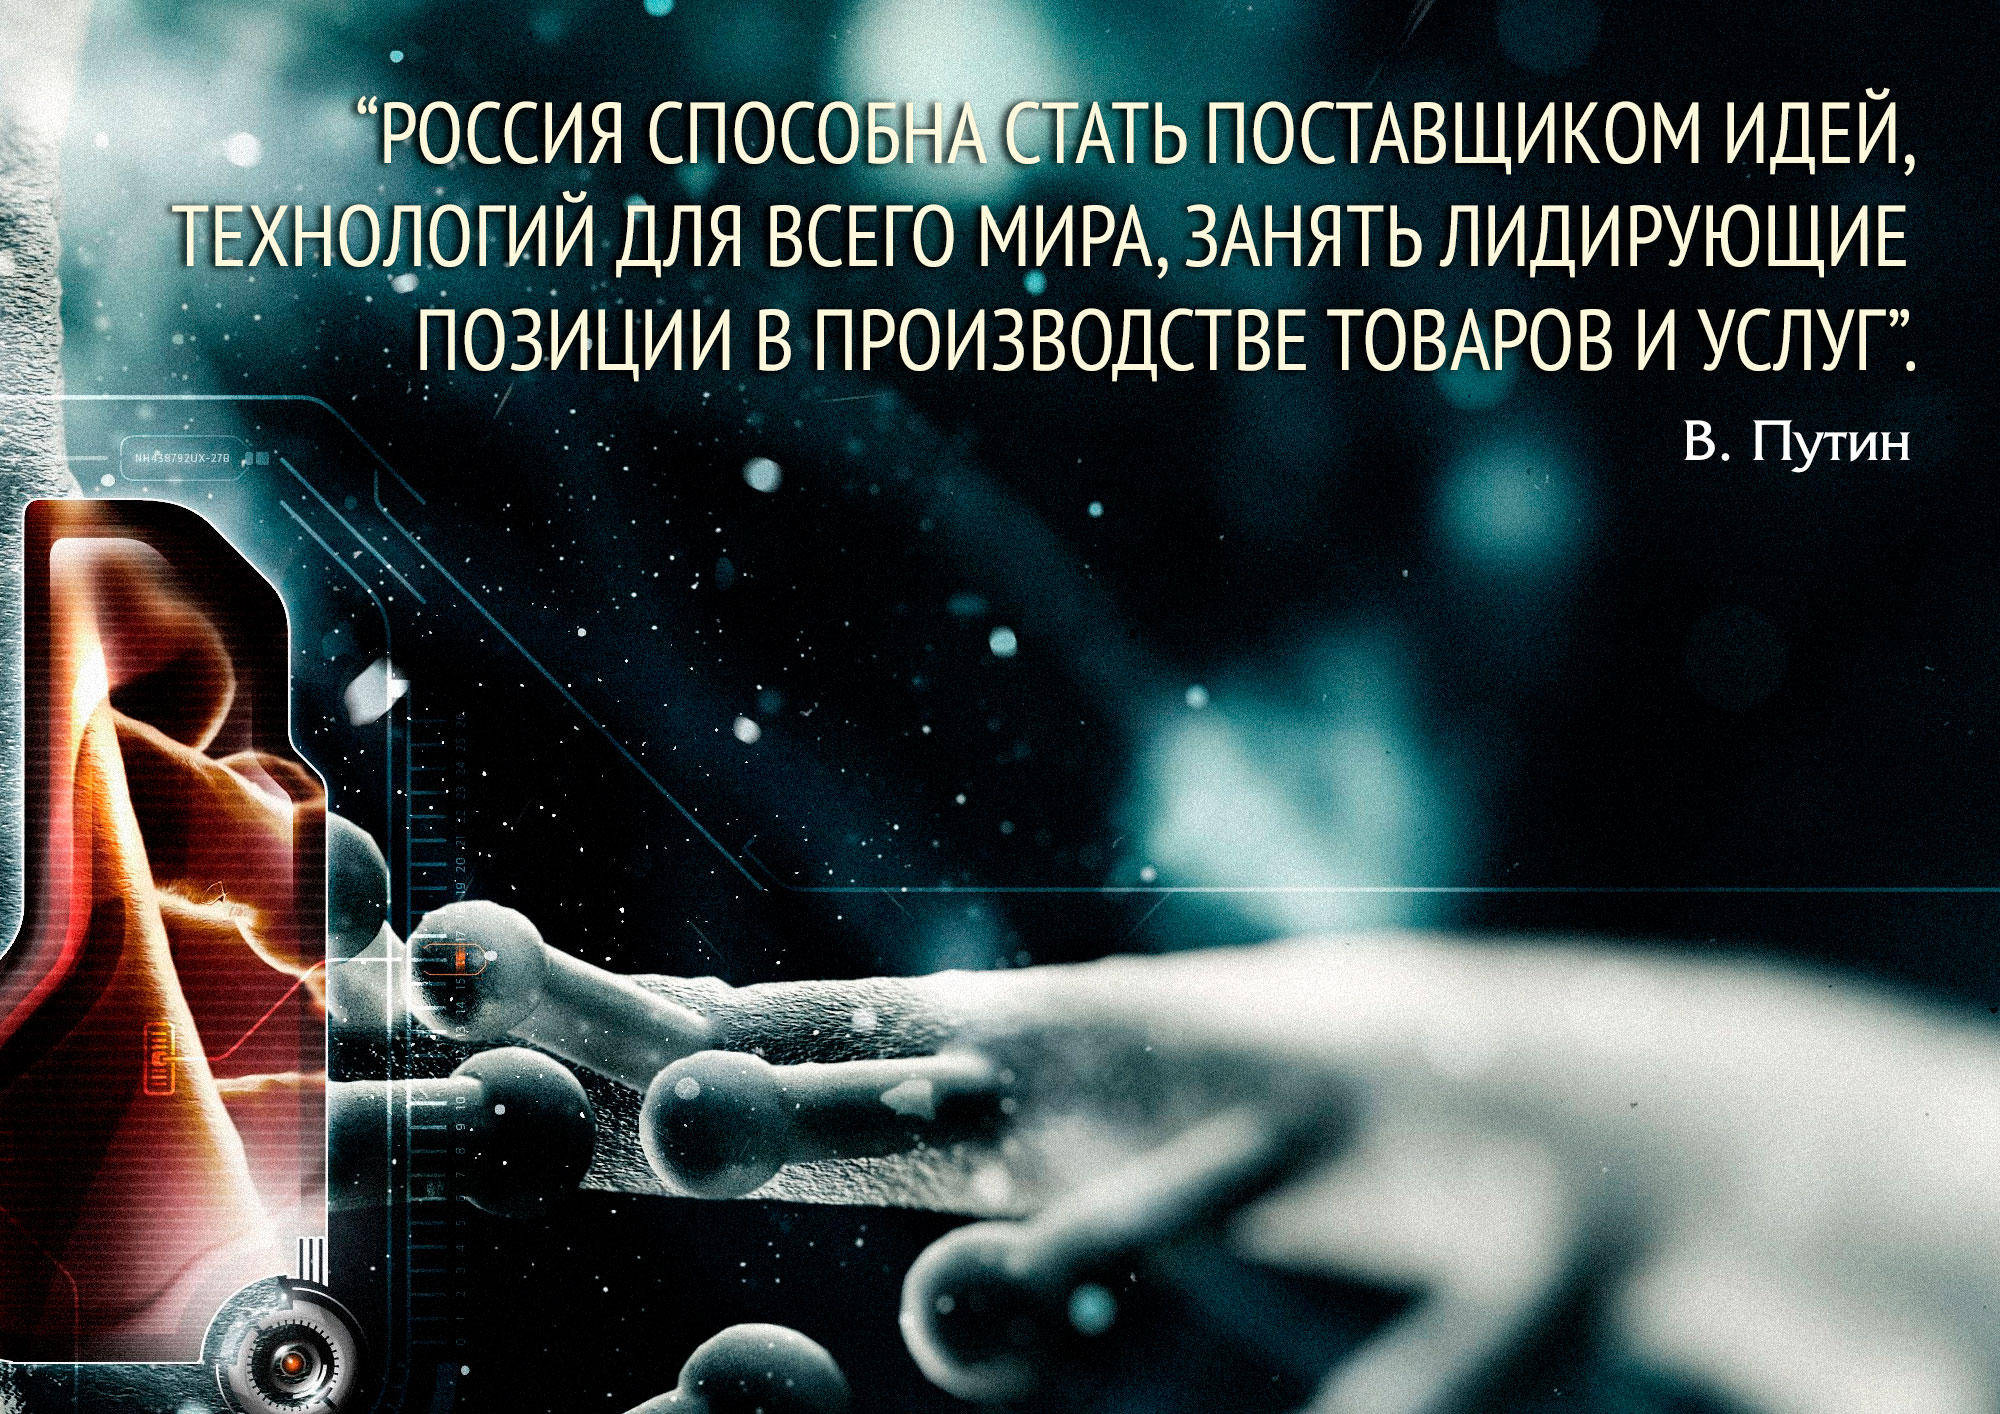 «Россия способна стать поставщиком идей, технологий для всего мира, занять лидирующие позиции в производстве товаров и услуг».